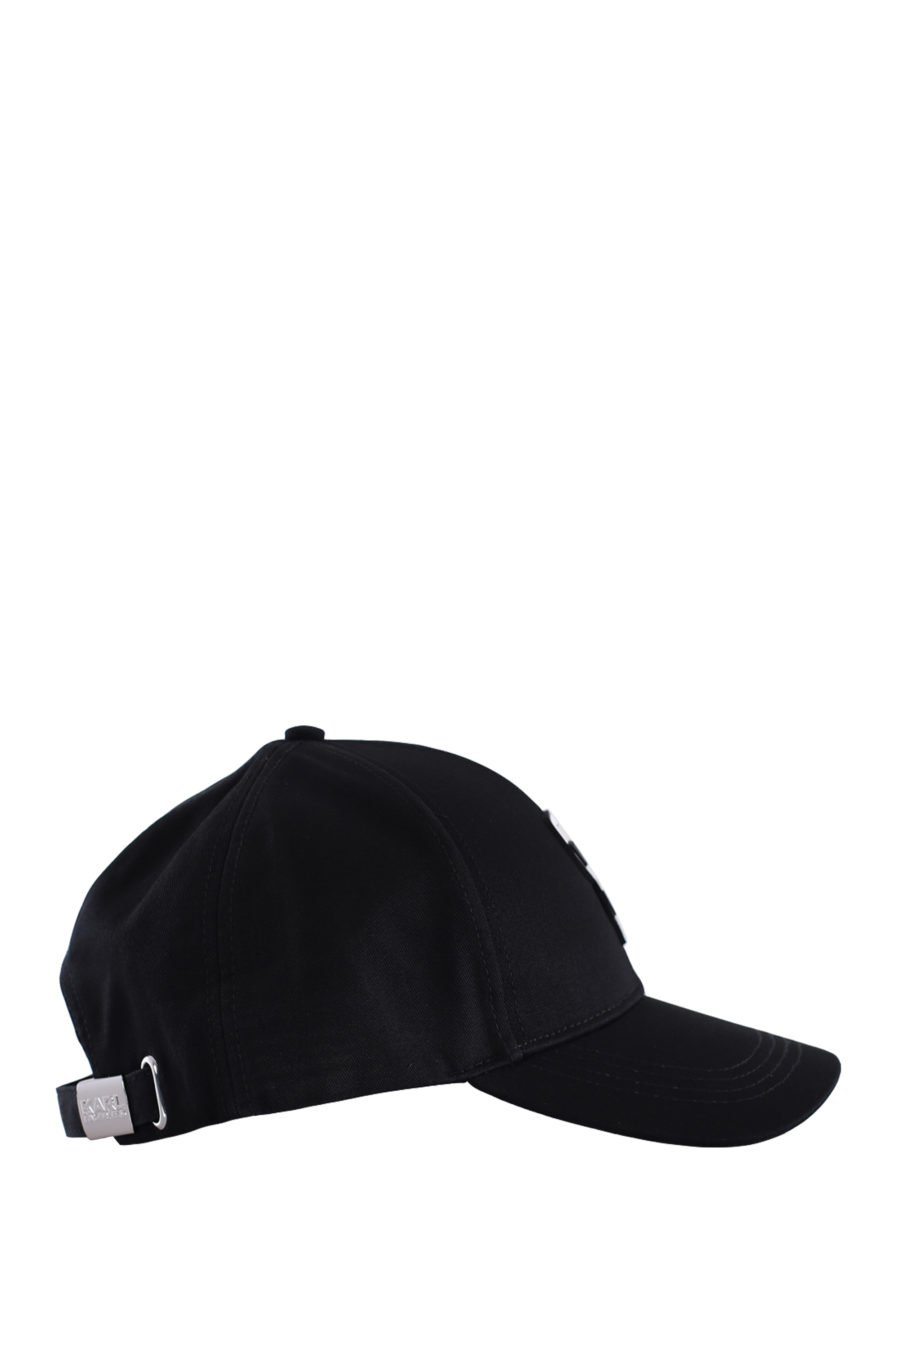 Black cap "ikonik" - IMG 0194